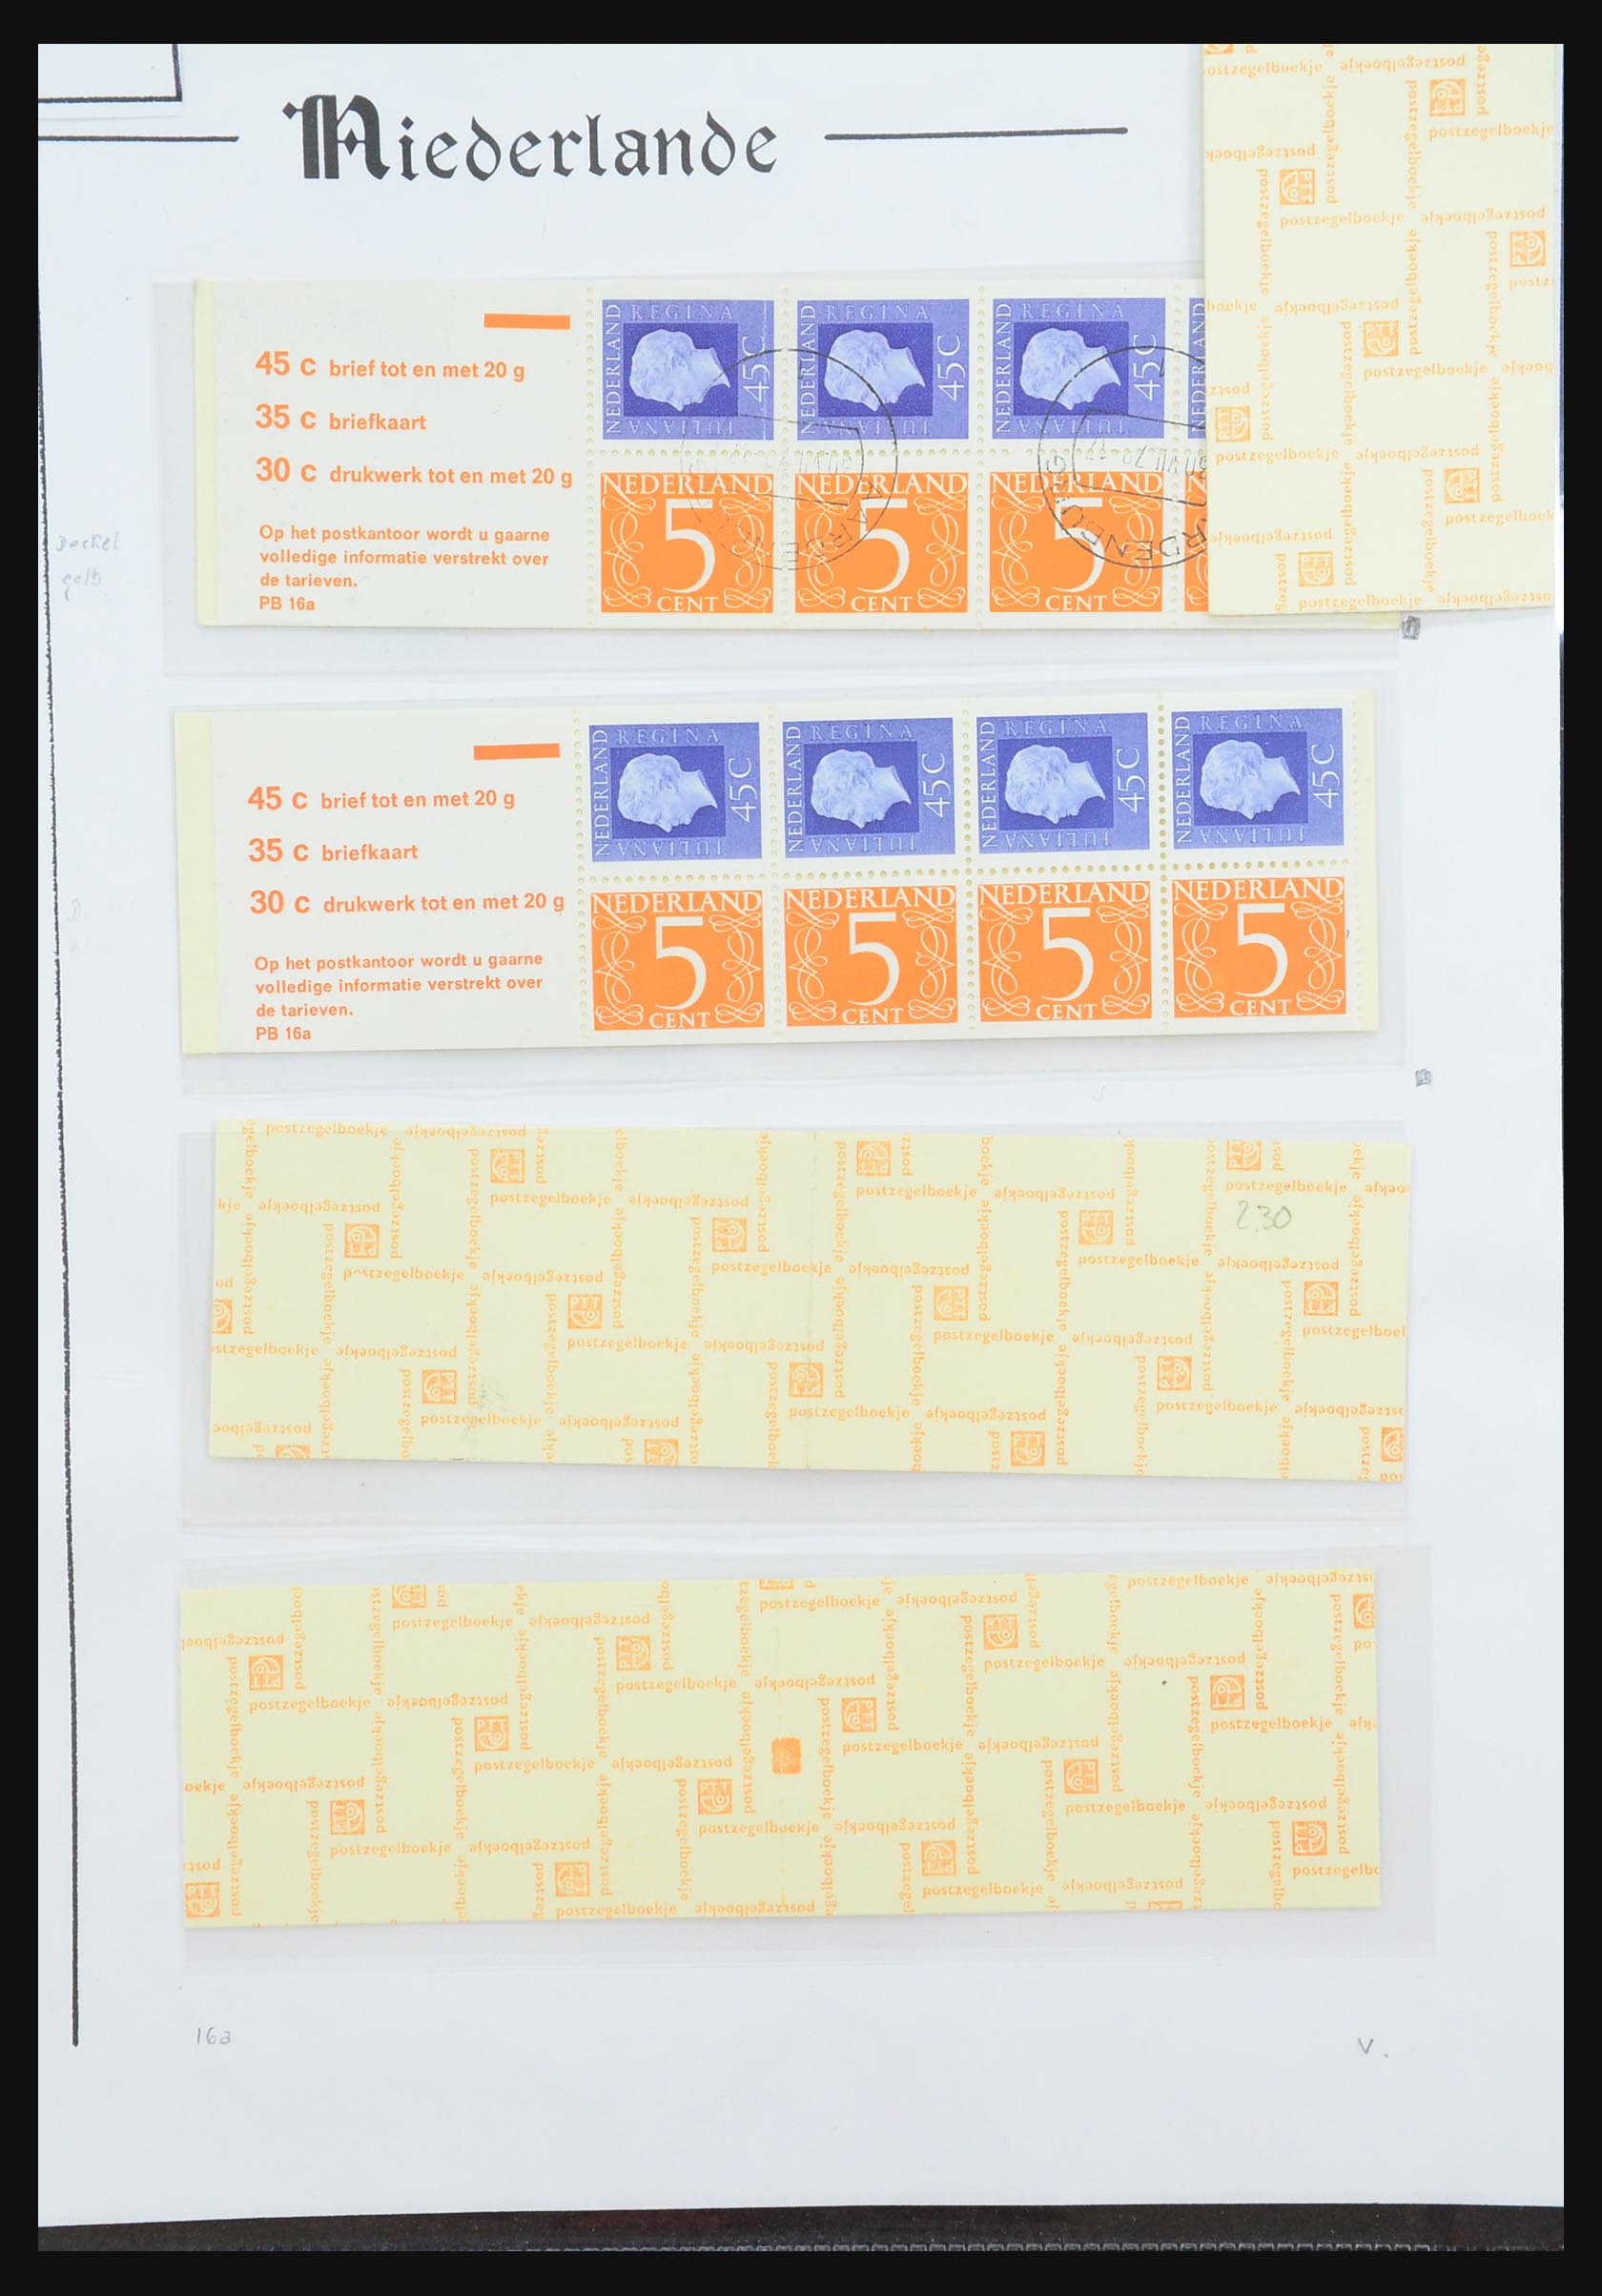 31311 058 - 31311 Netherlands stamp booklets 1964-1994.